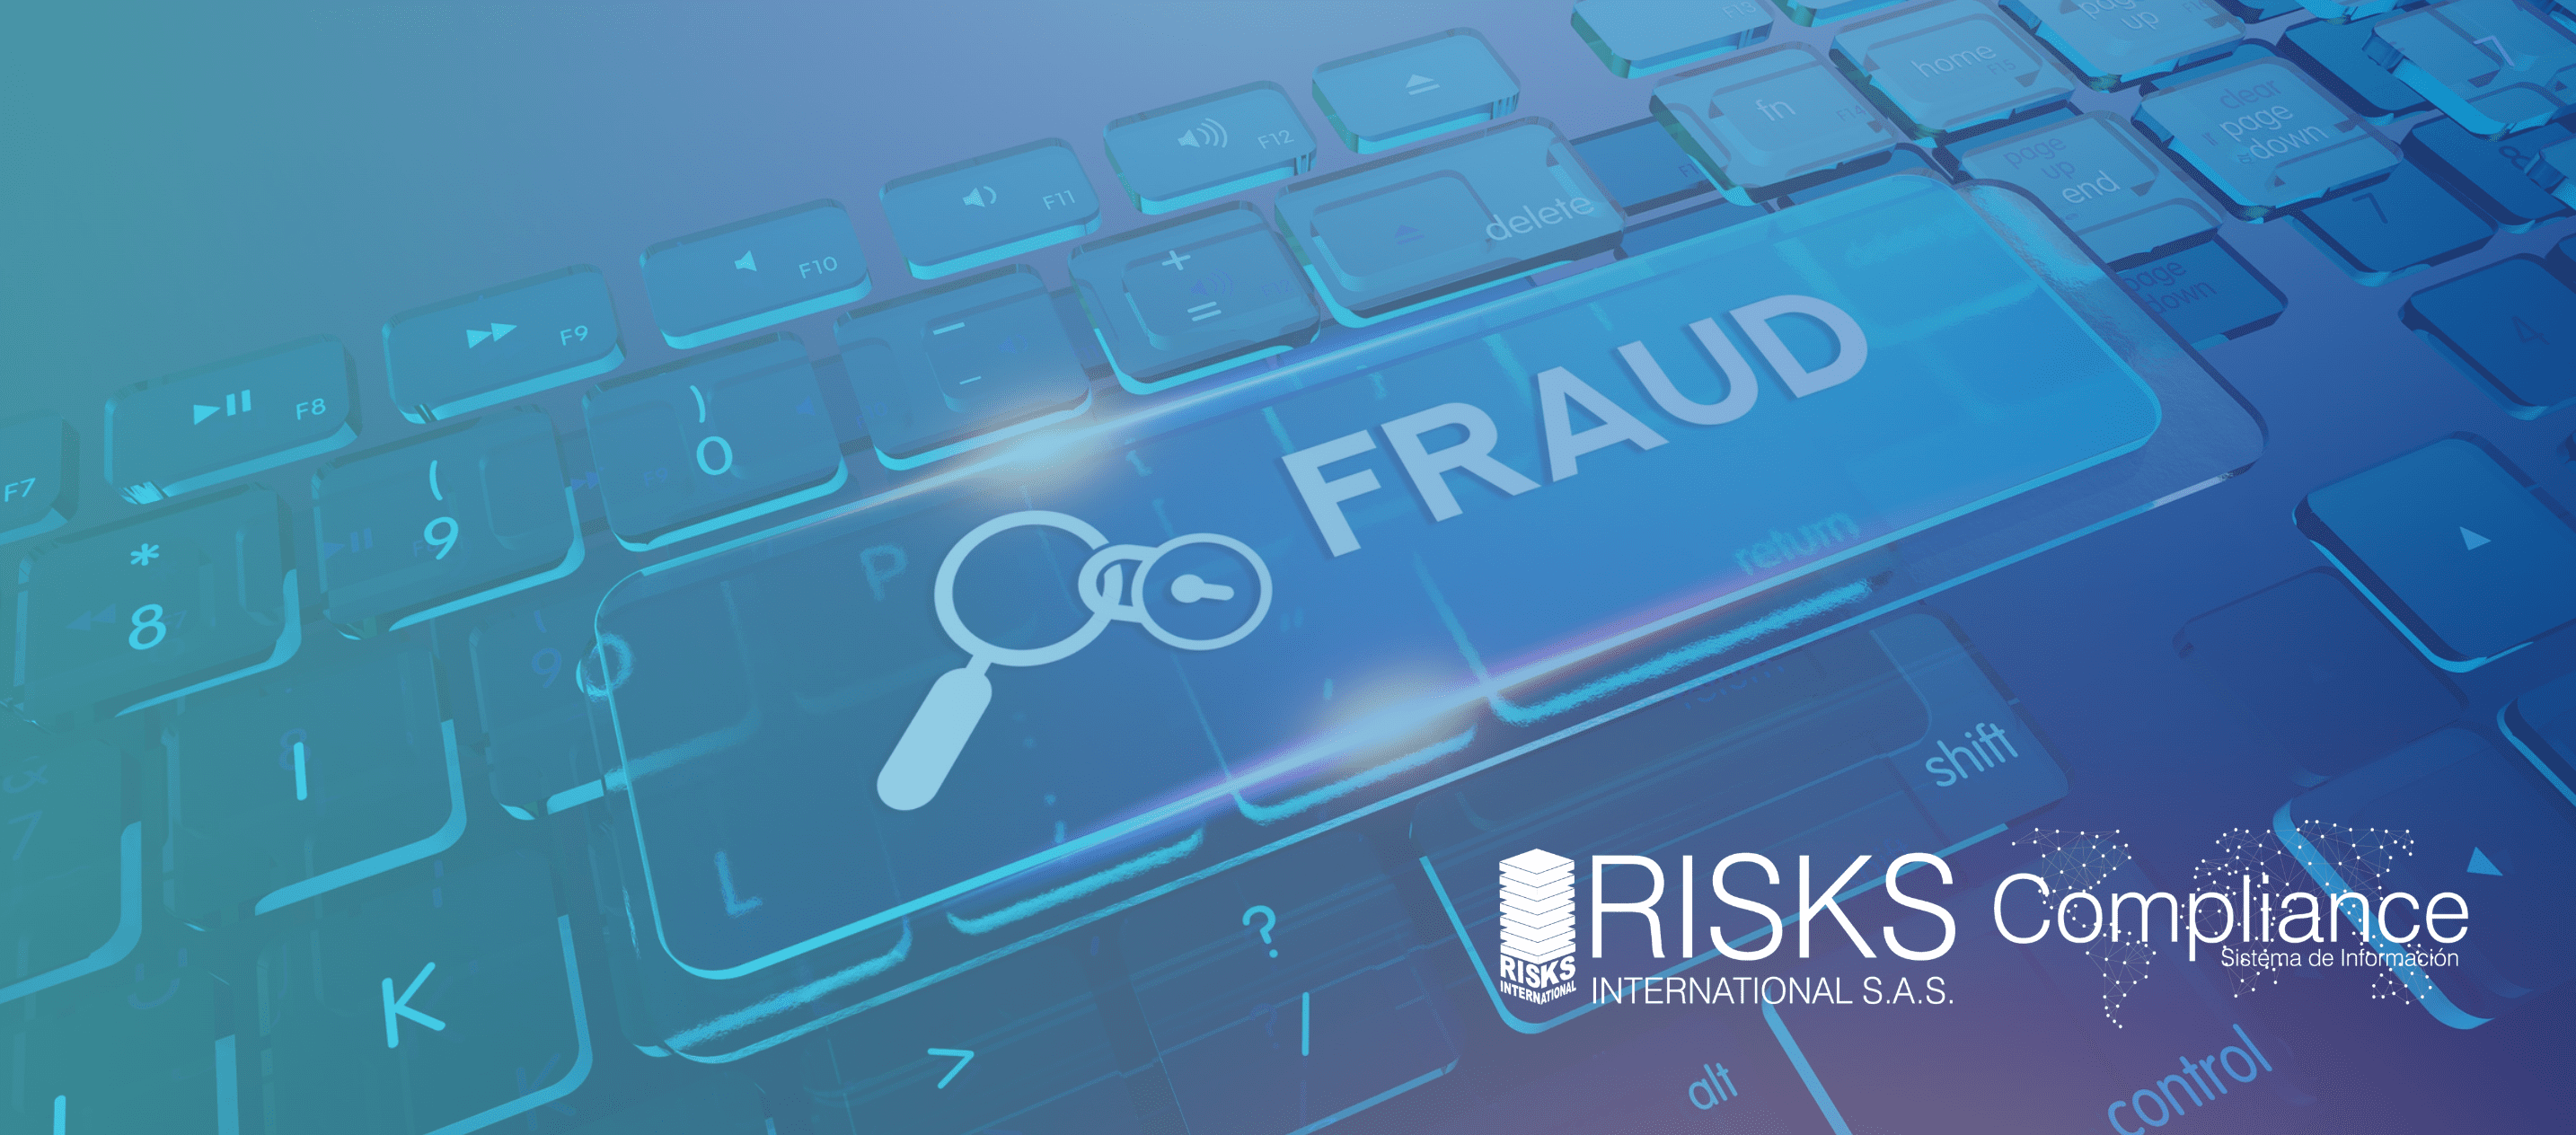 10 pasos efectivos para prevenir el fraude: una guía práctica